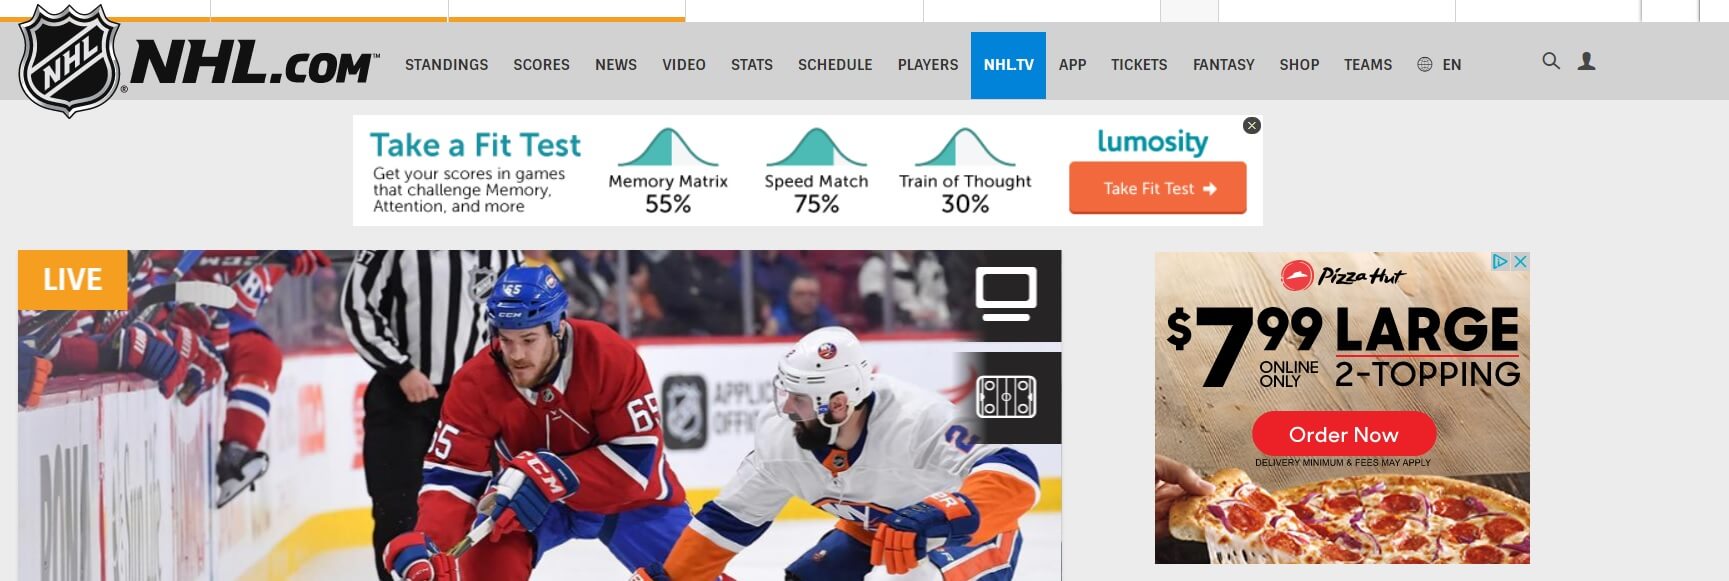 Beispiele für prominente Werbeplatzierungen auf der NHL-Website